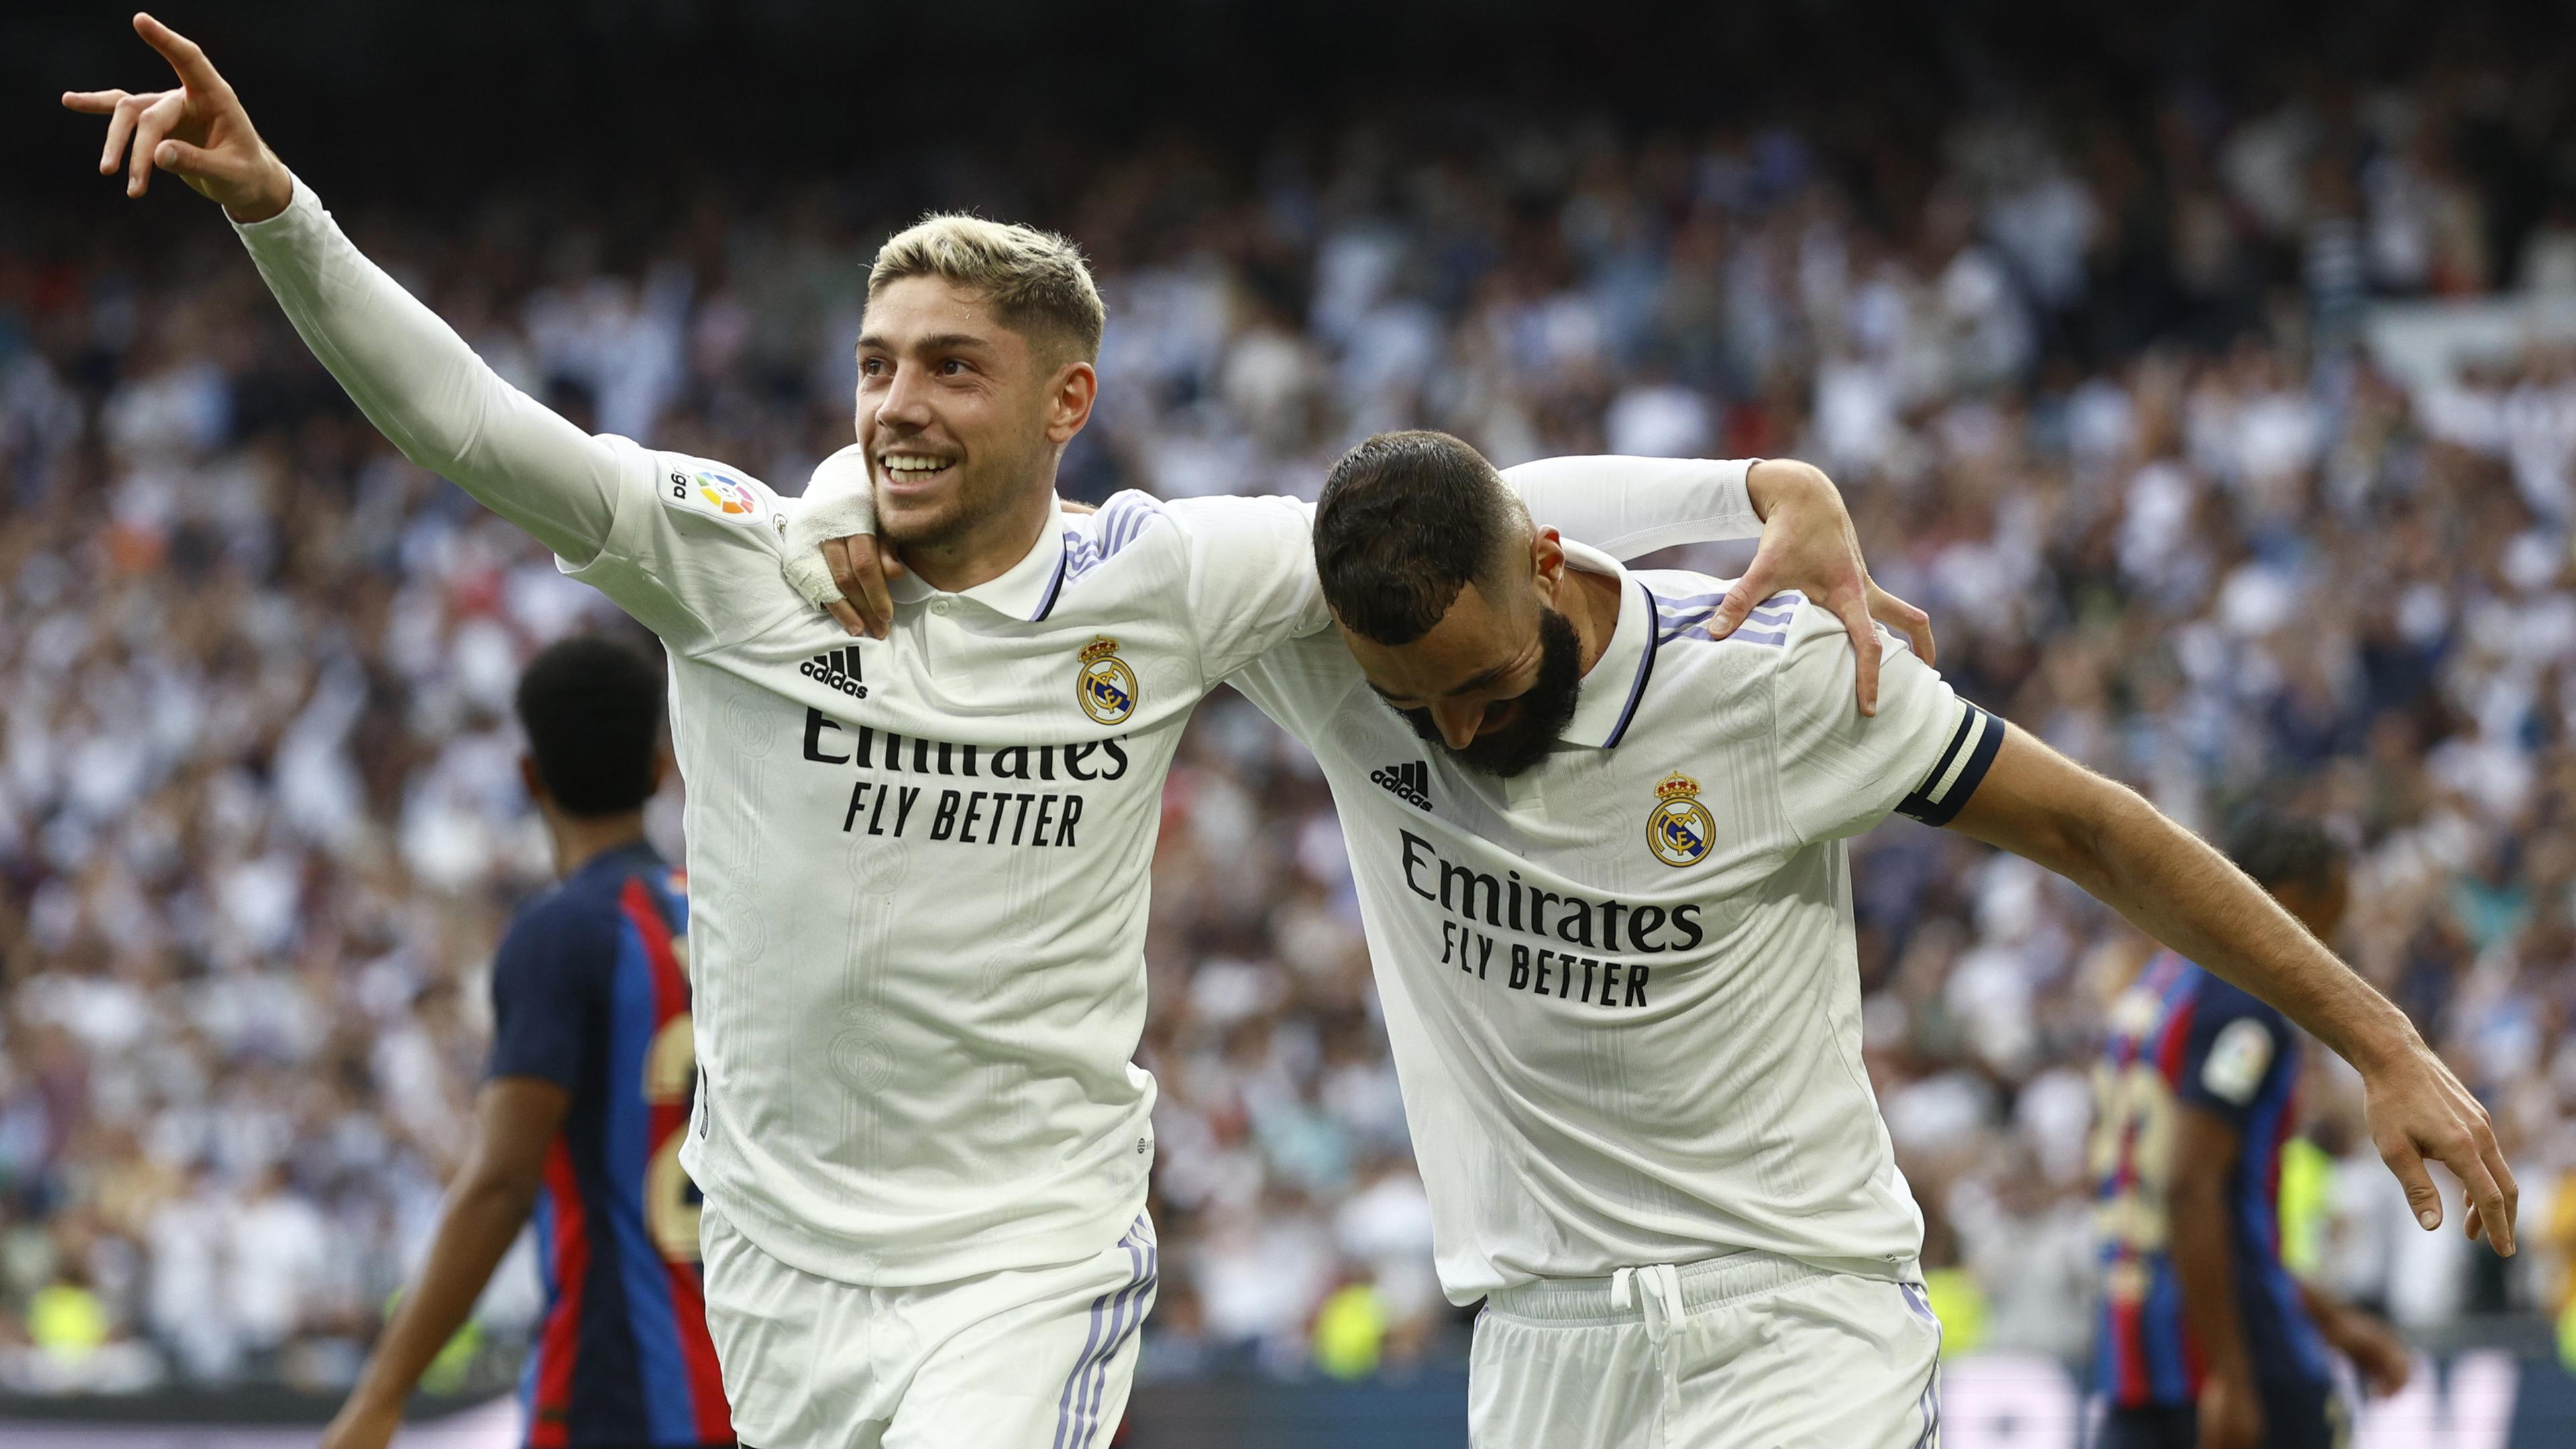 Federico Valverde (L) von Real Madrid feiert mit Teamkollege Karim Benzema (R), nachdem er beim El Clasico, dem spanischen LaLiga-Fußballspiel zwischen Real Madrid und dem FC Barcelona in Madrid, Spanien, am 16.10.2022 die 2:0-Führung erzielt hat.